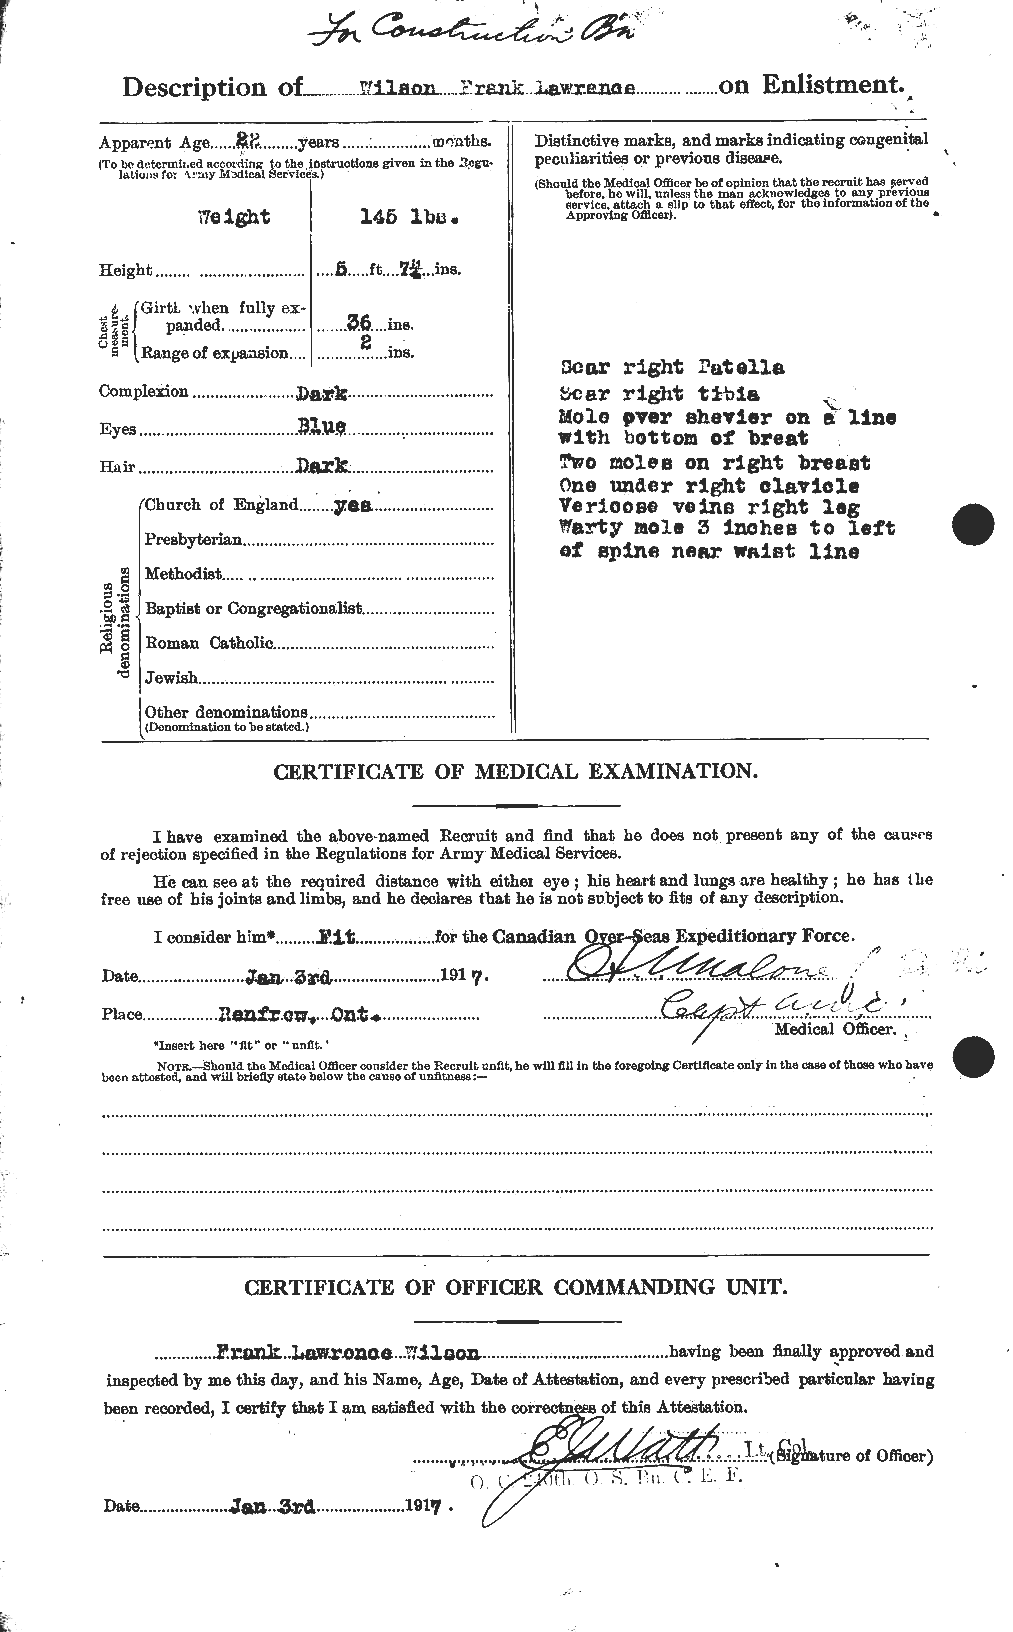 Dossiers du Personnel de la Première Guerre mondiale - CEC 680679b